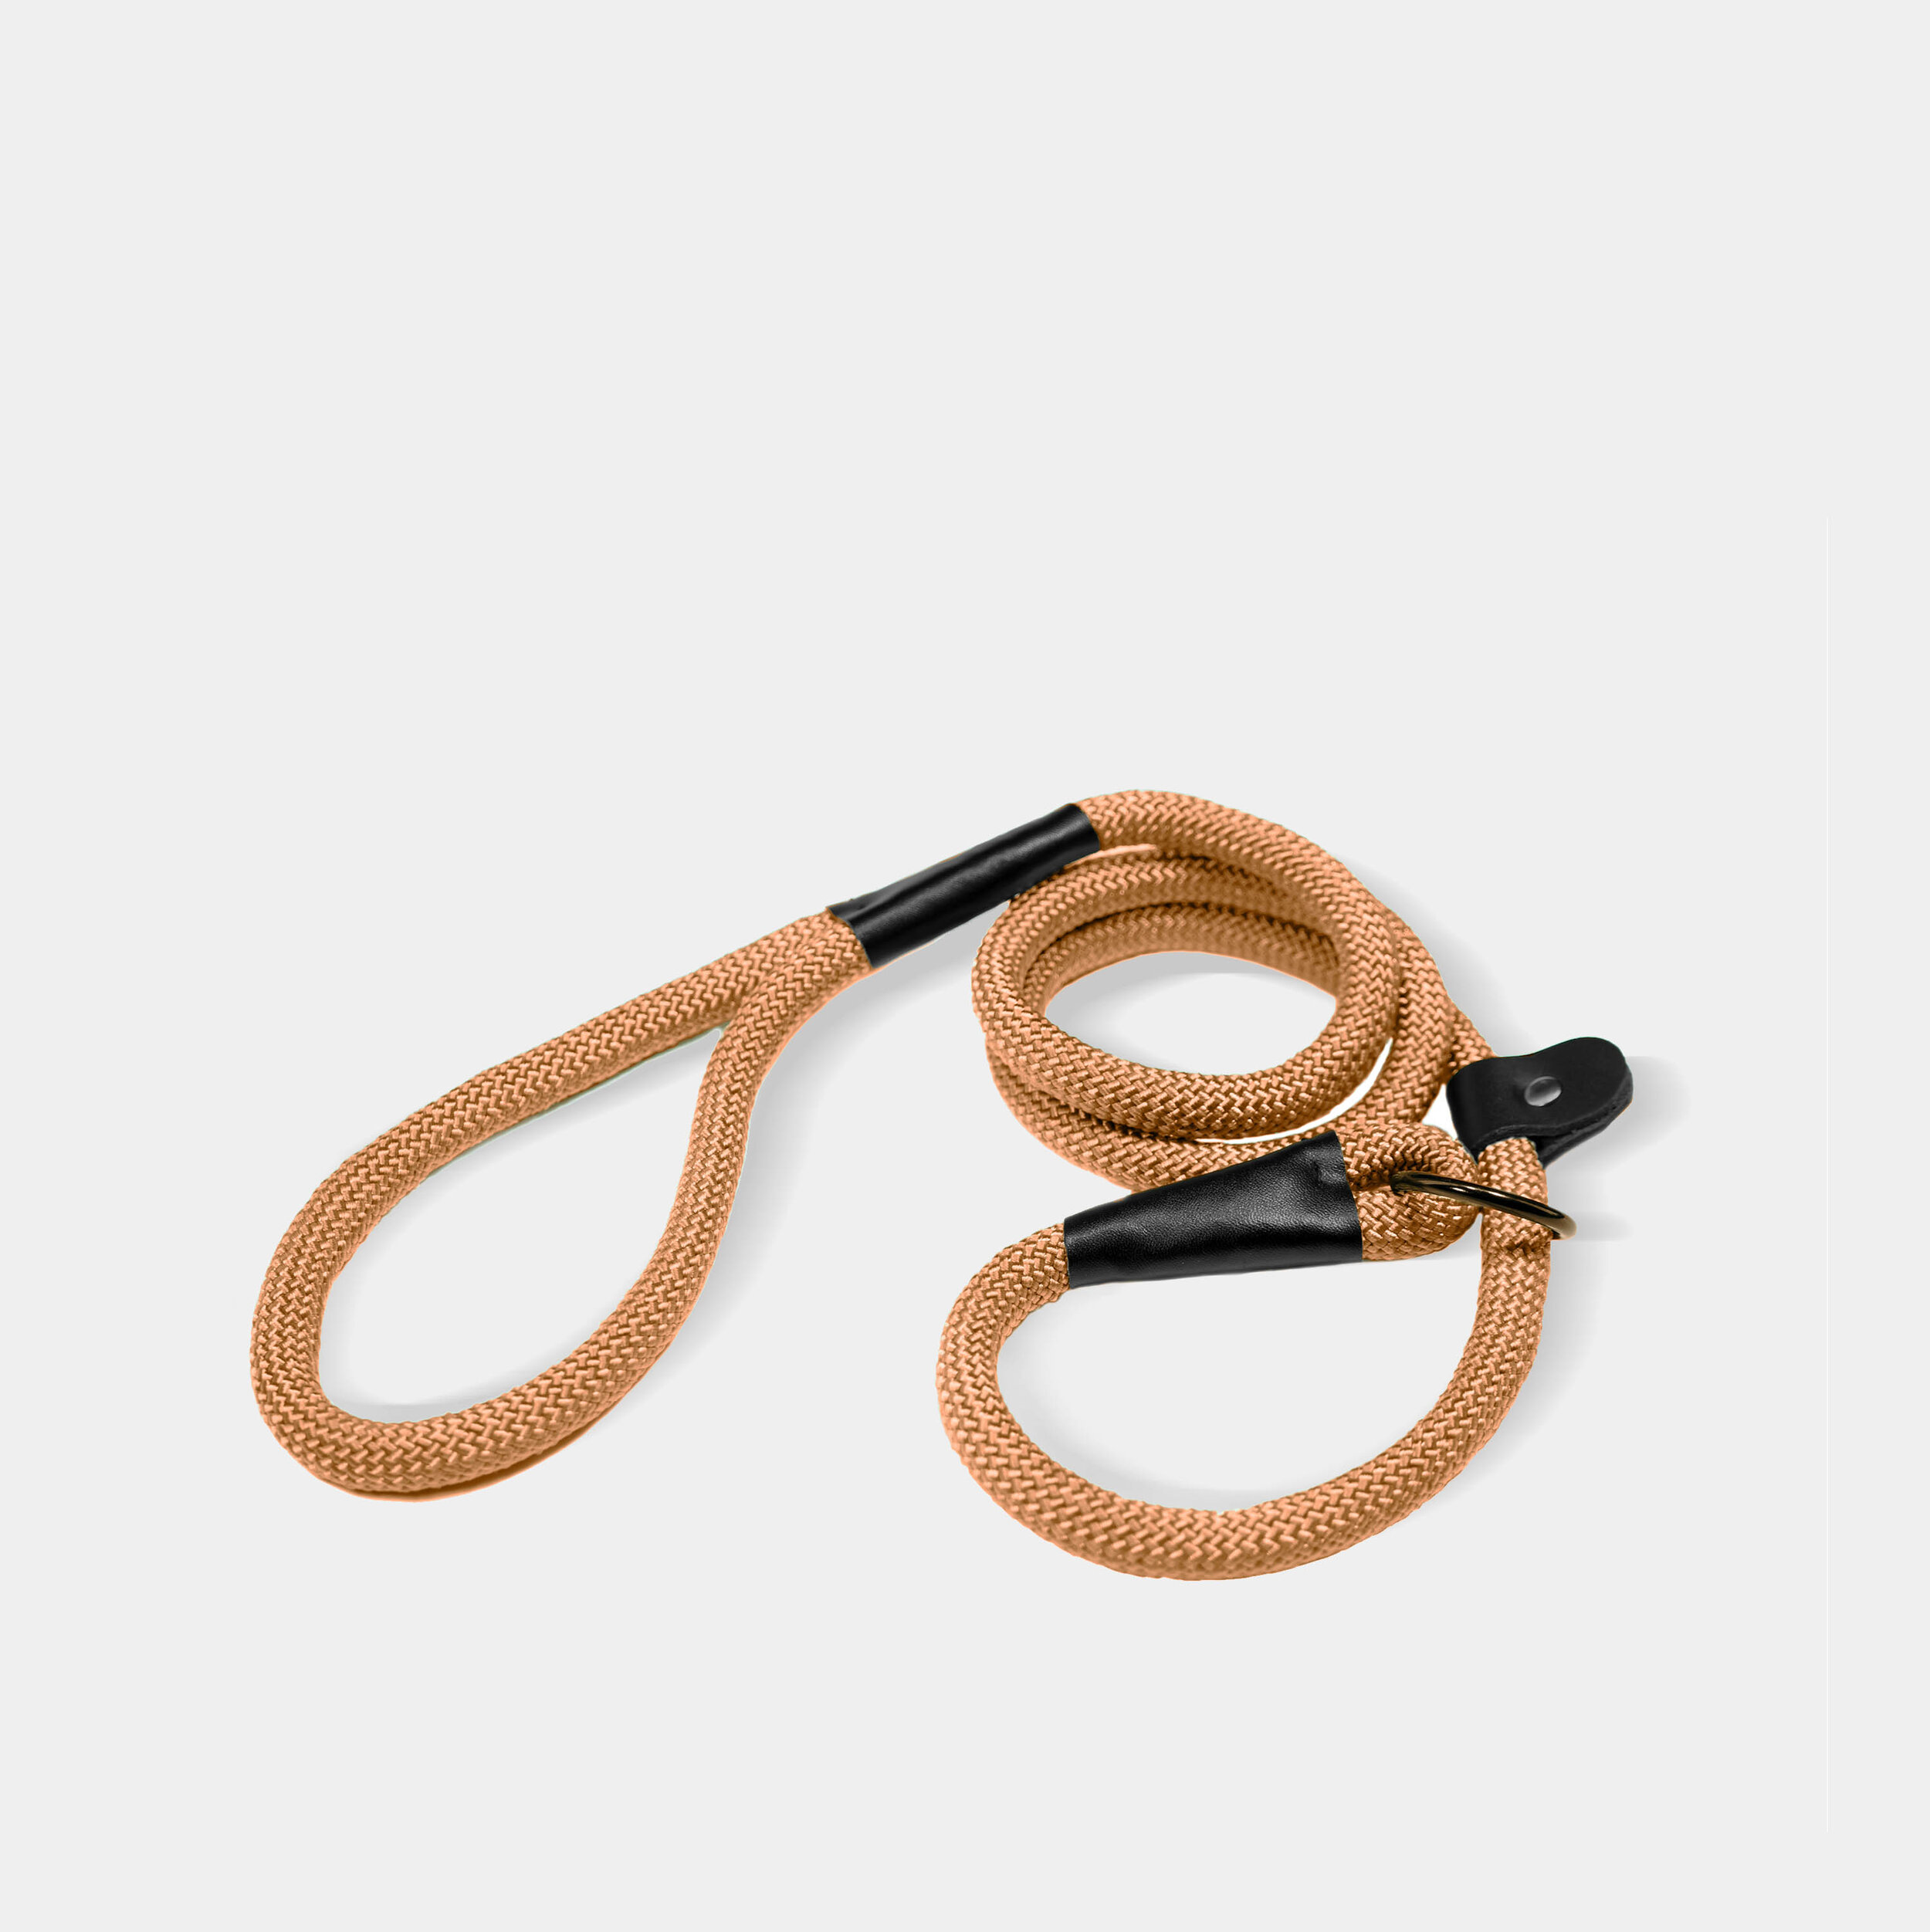 Campi dog leash in orange